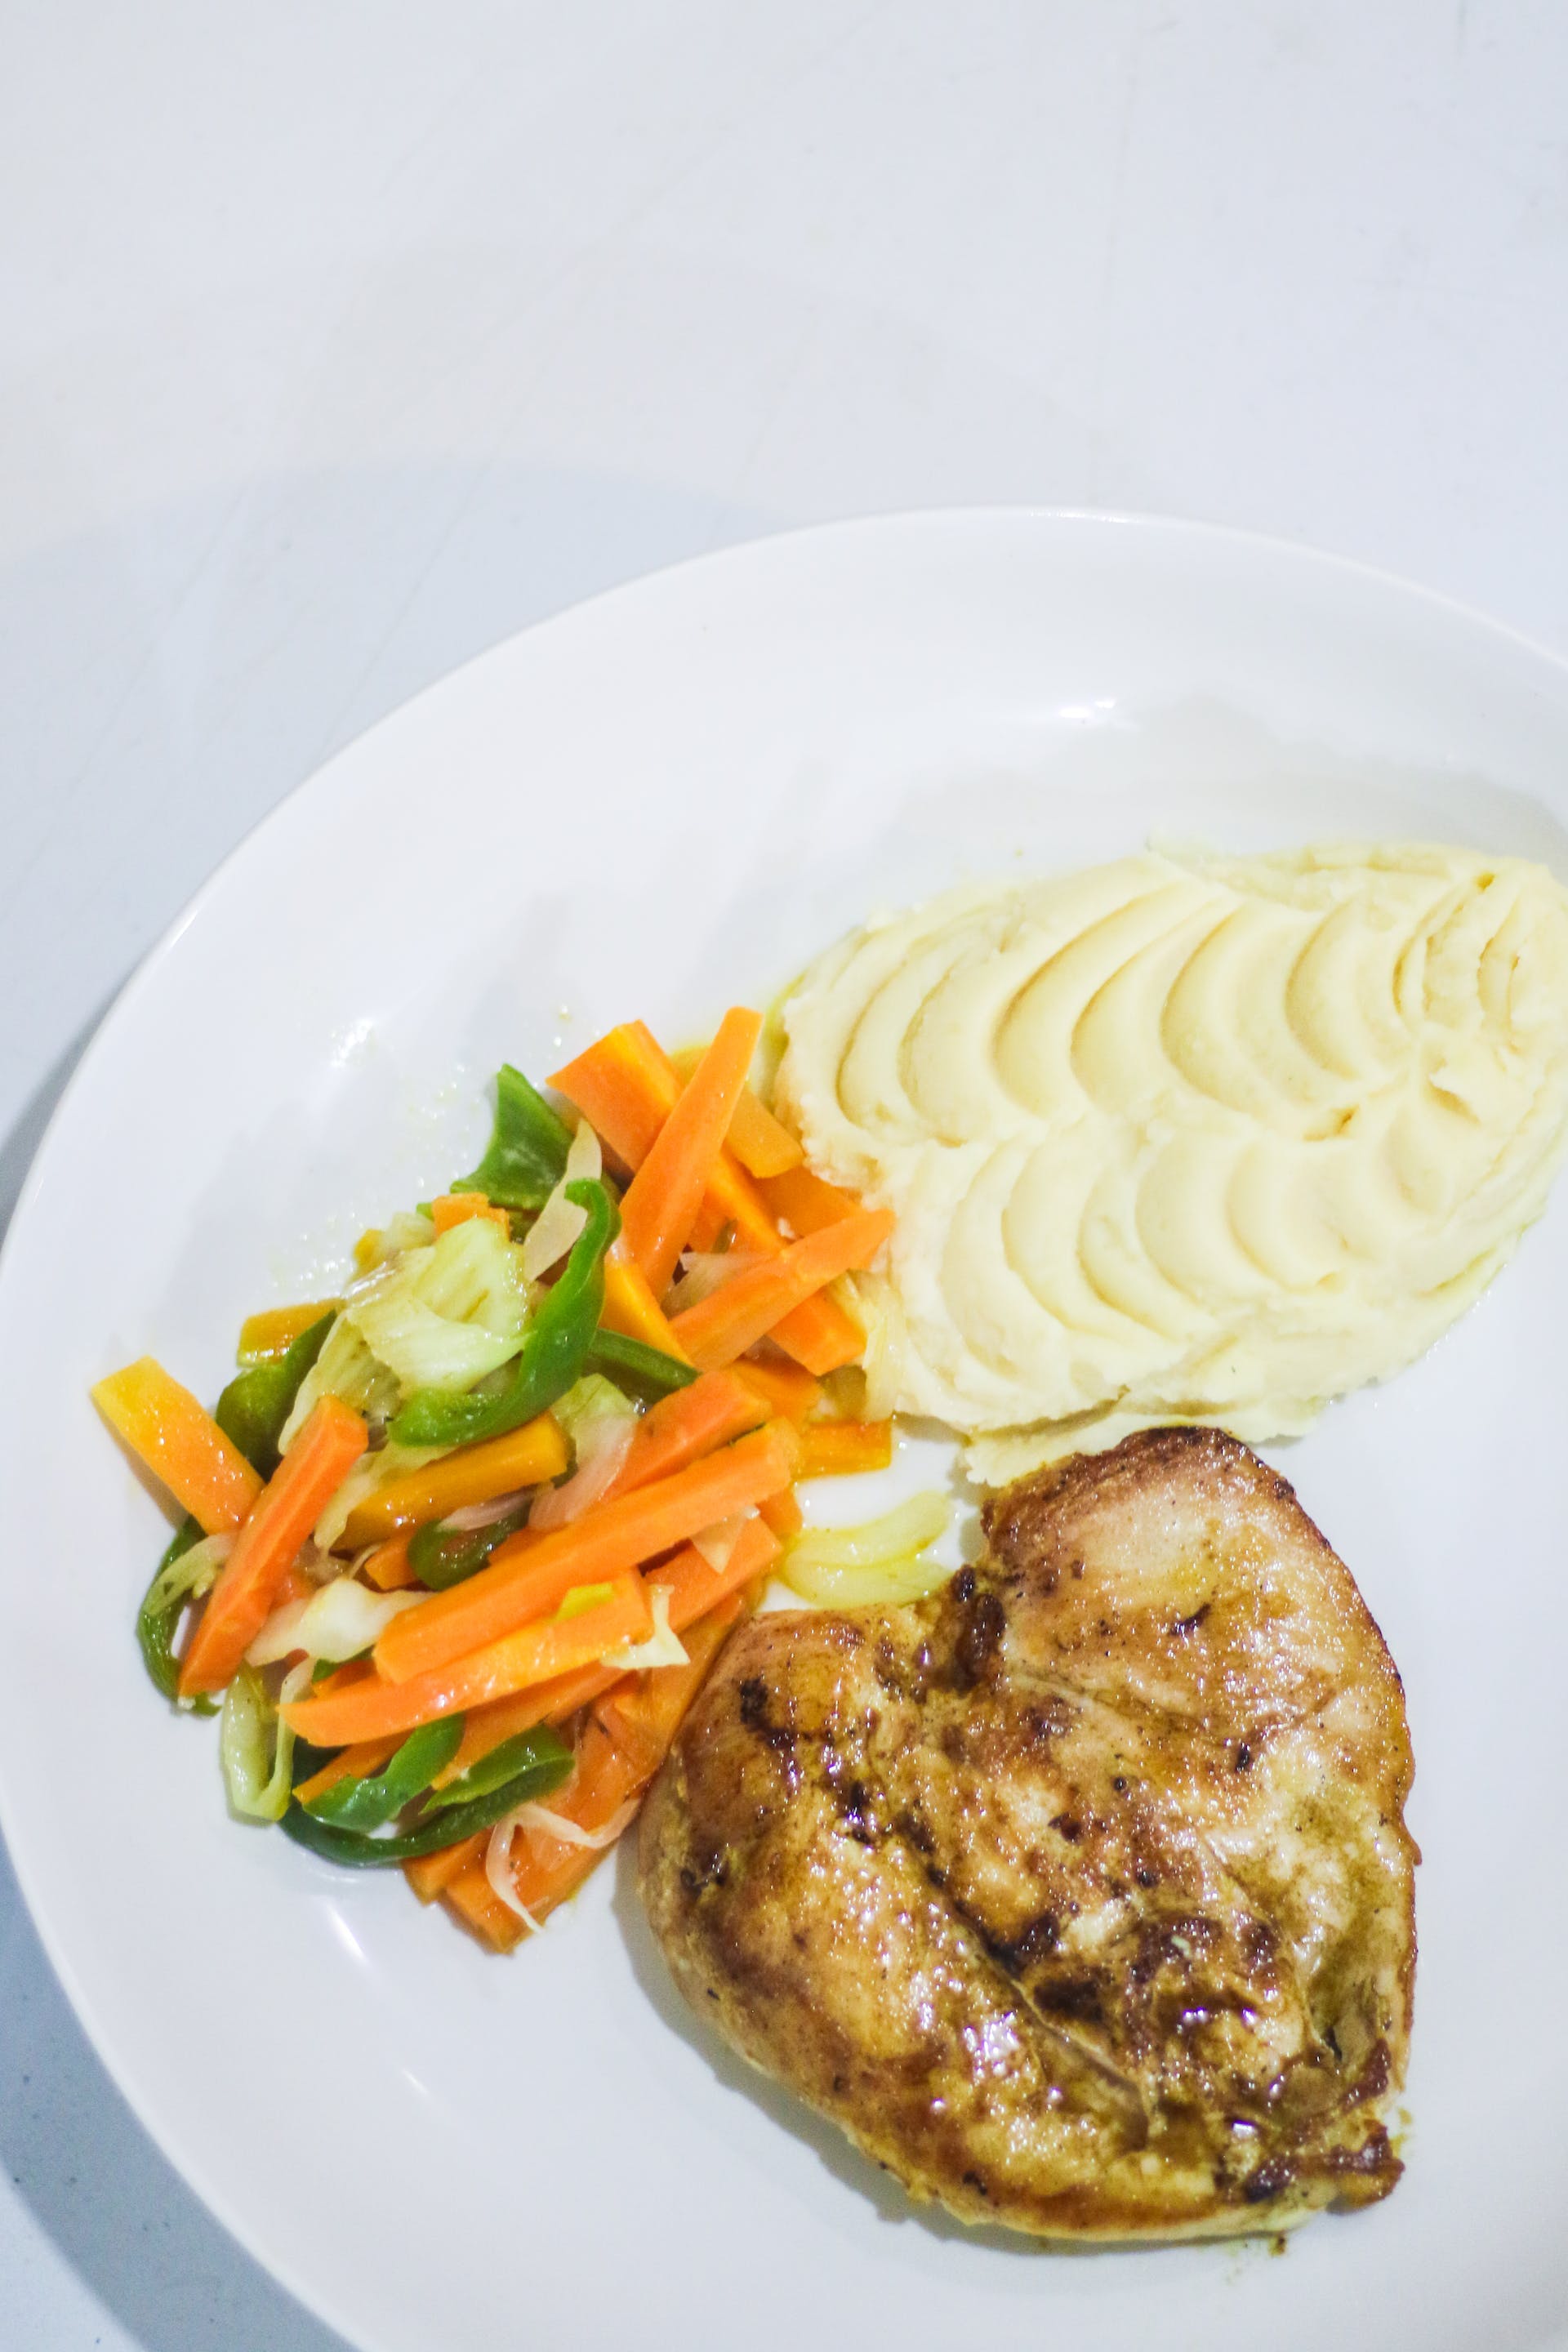 Un plato de pechuga de pollo, verduras y puré de patatas | Fuente: Pexels